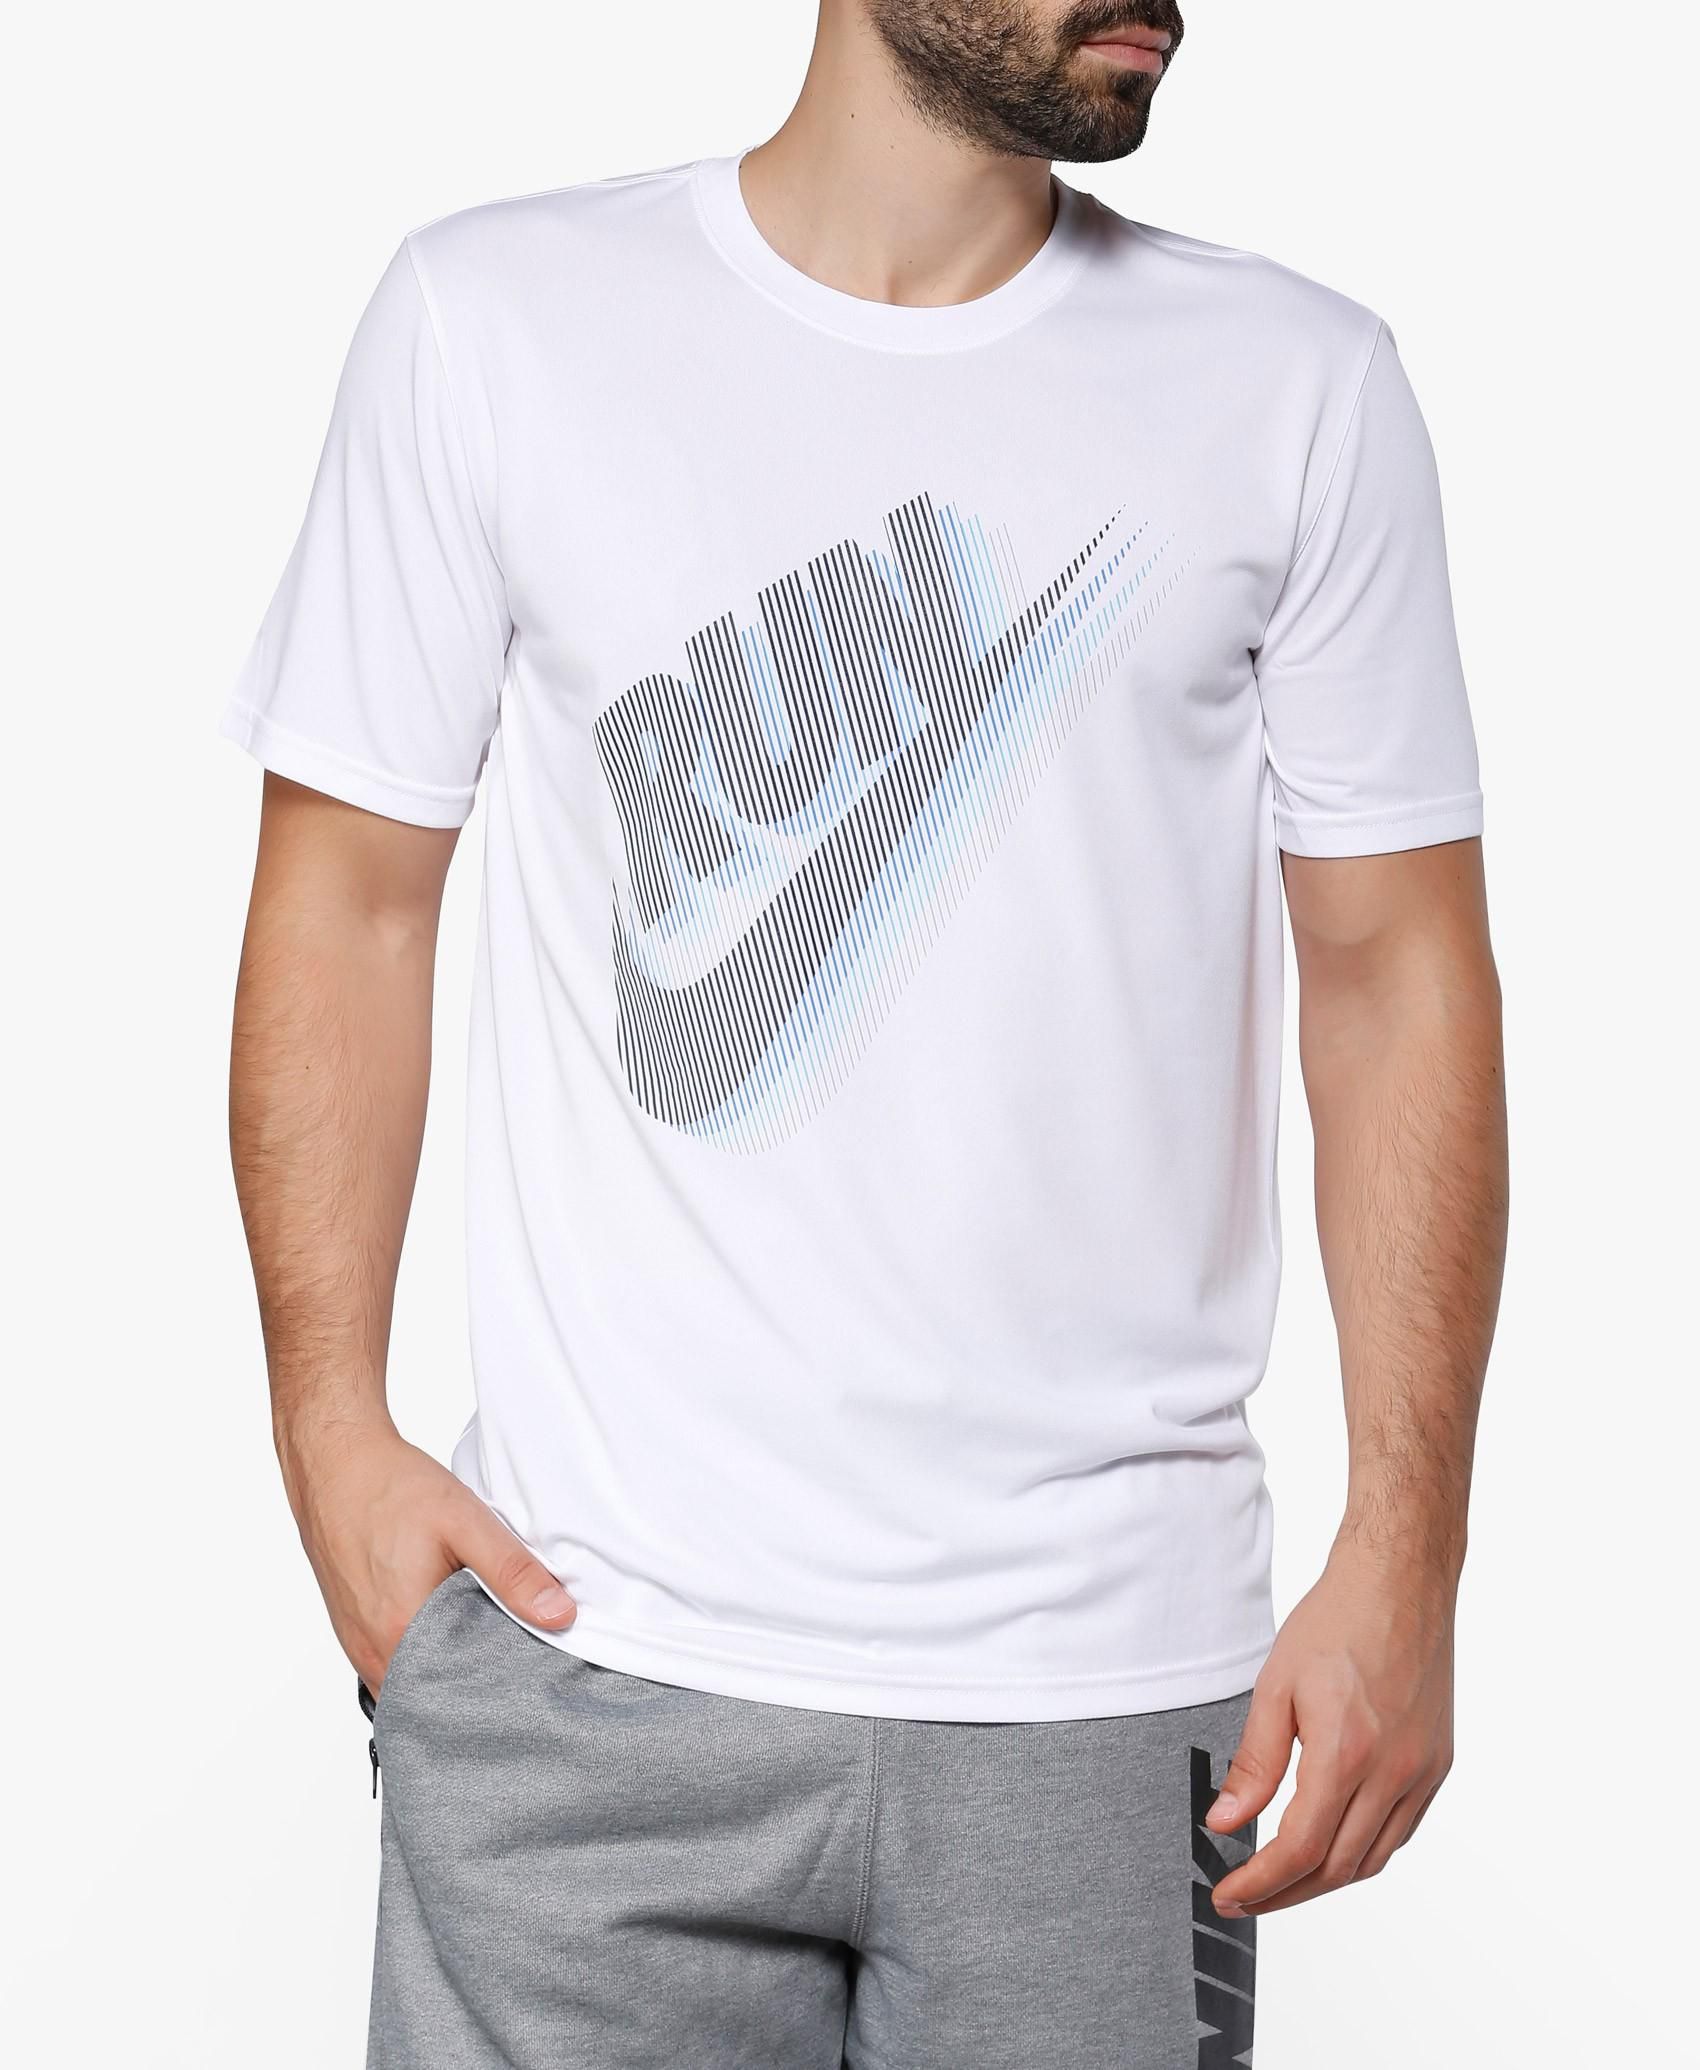 Dry Running T-Shirt